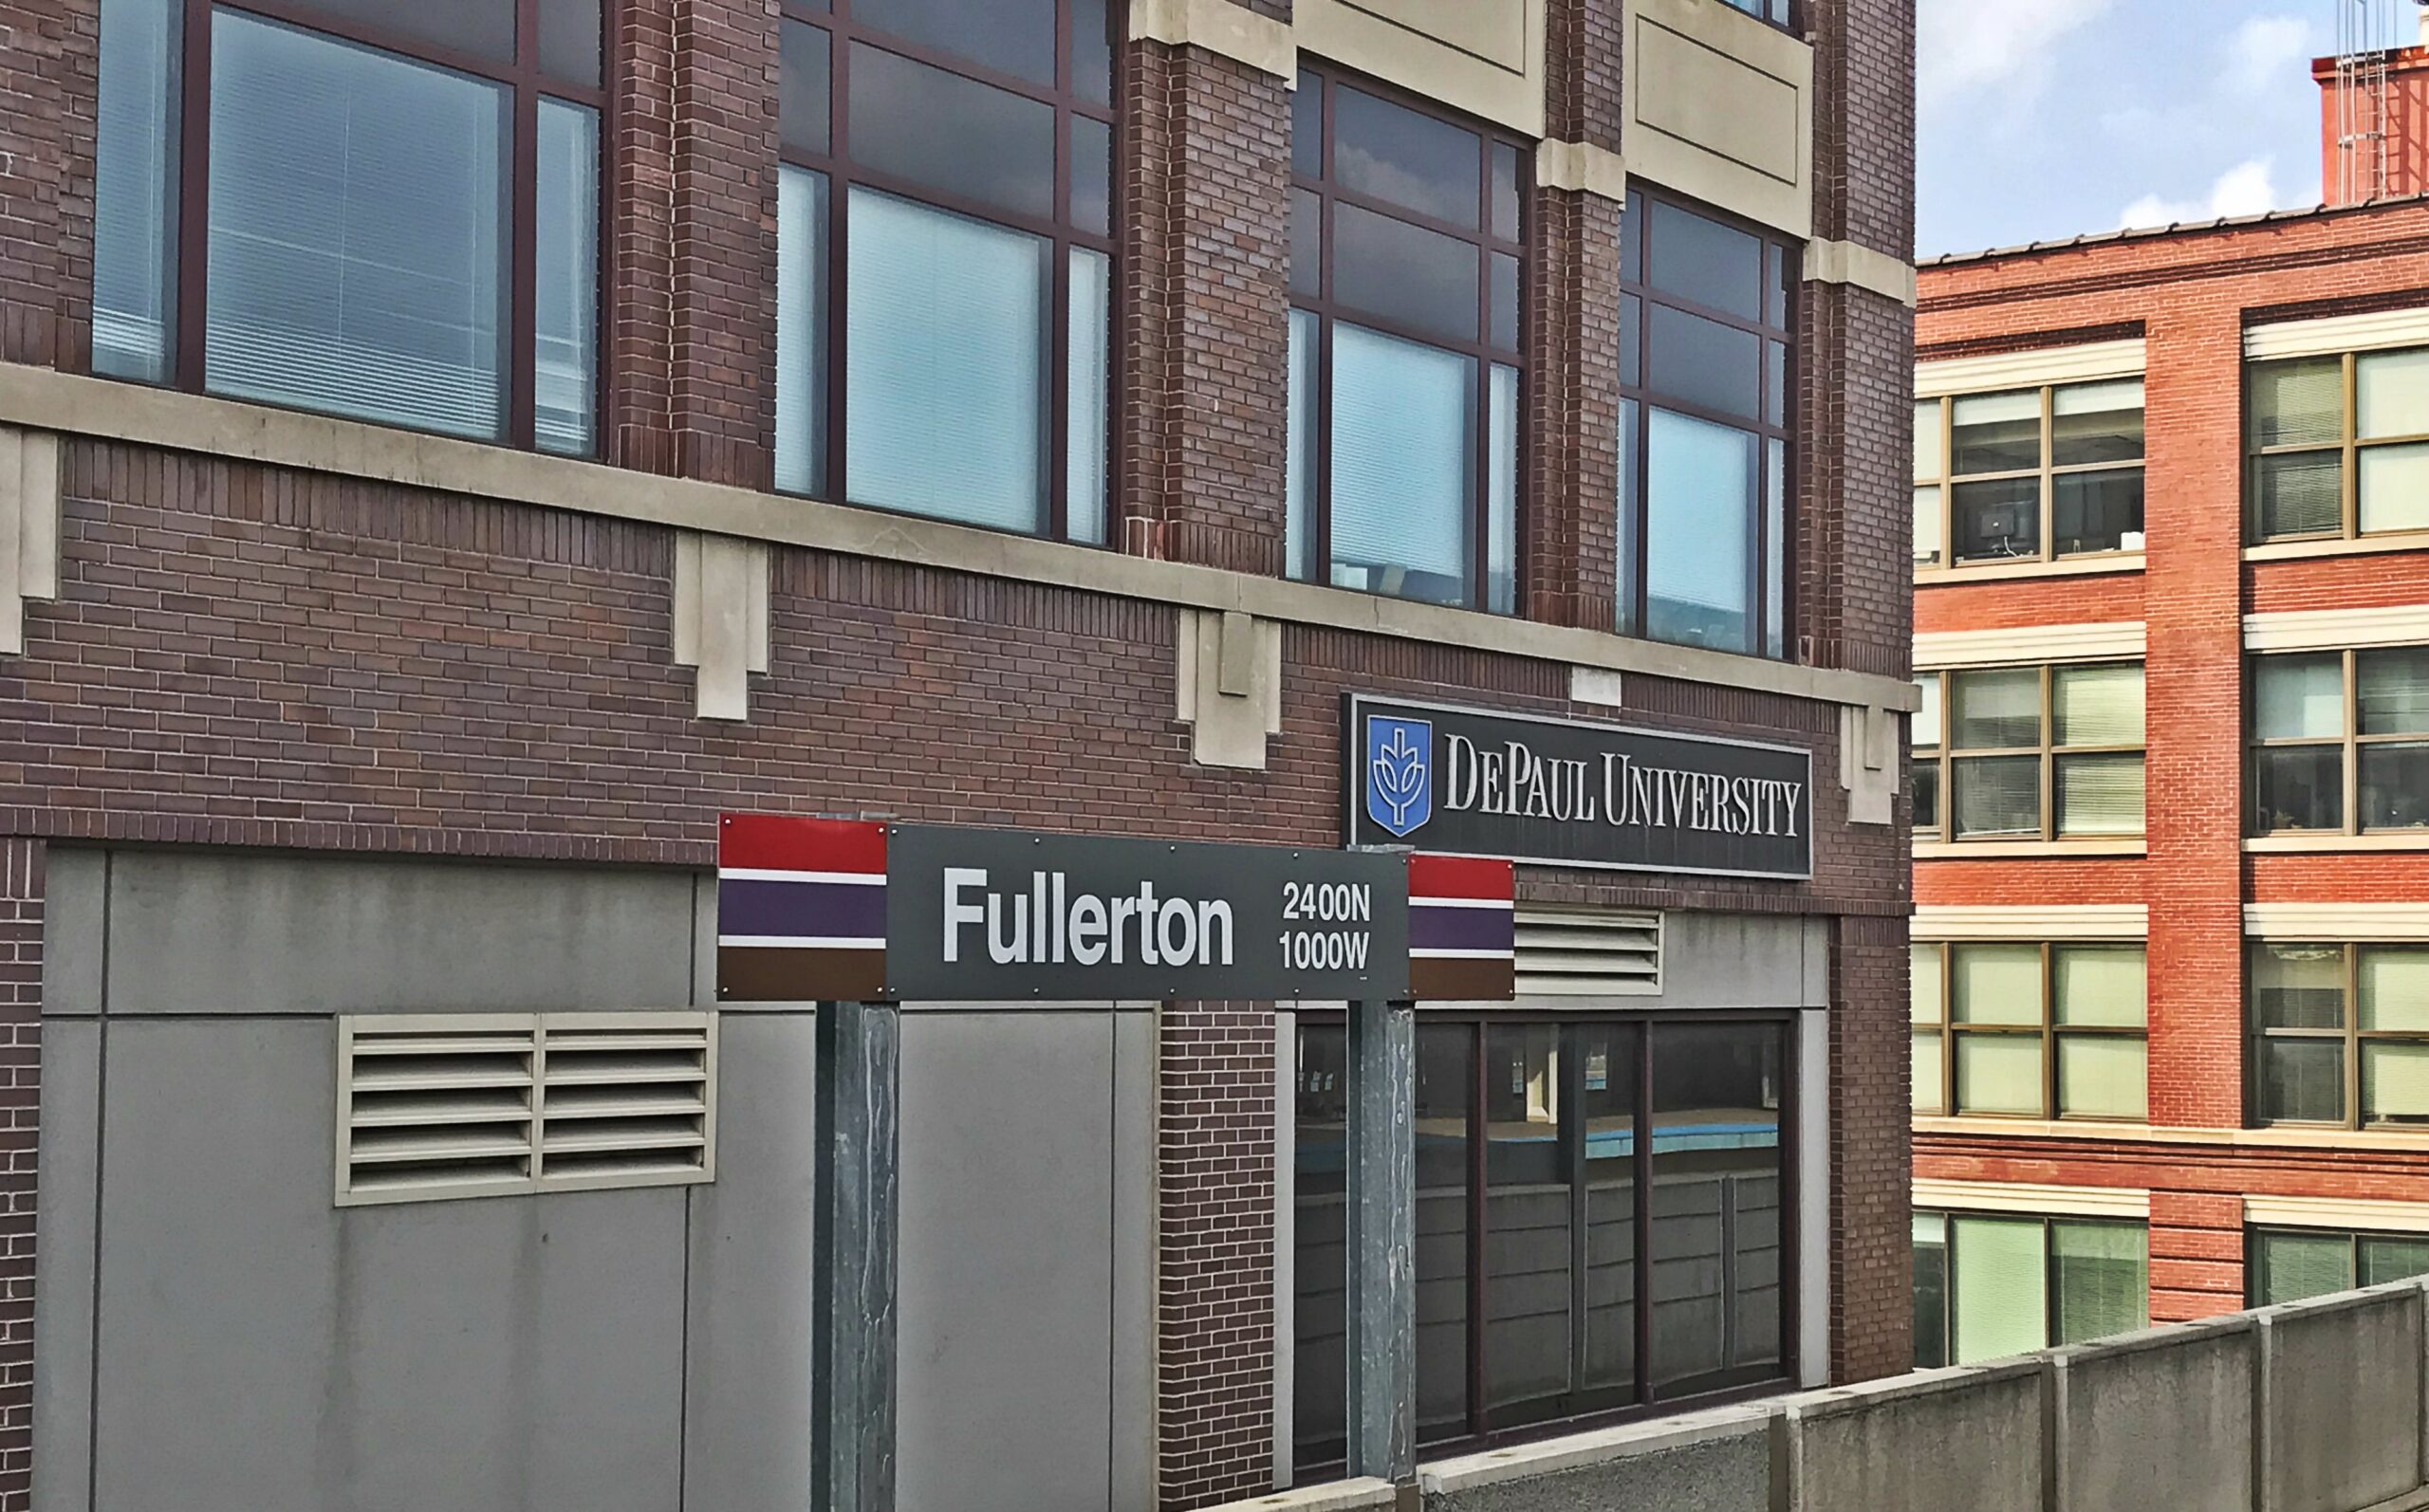 Fullerton Station